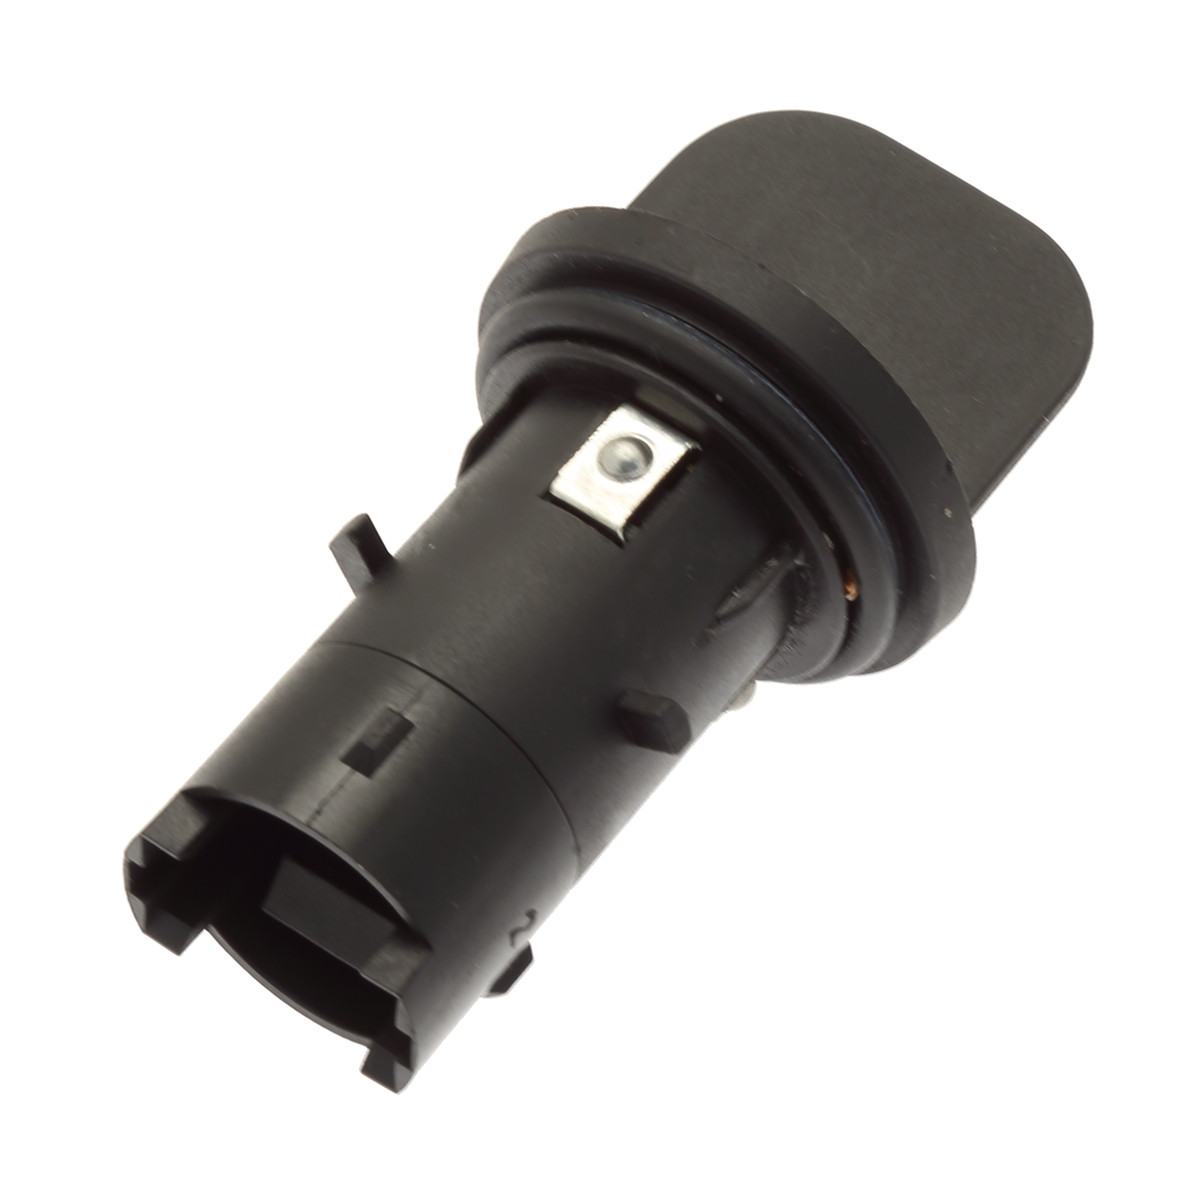 Genuine OEM Parking Light Bulb Socket for Audi 8D0953053 